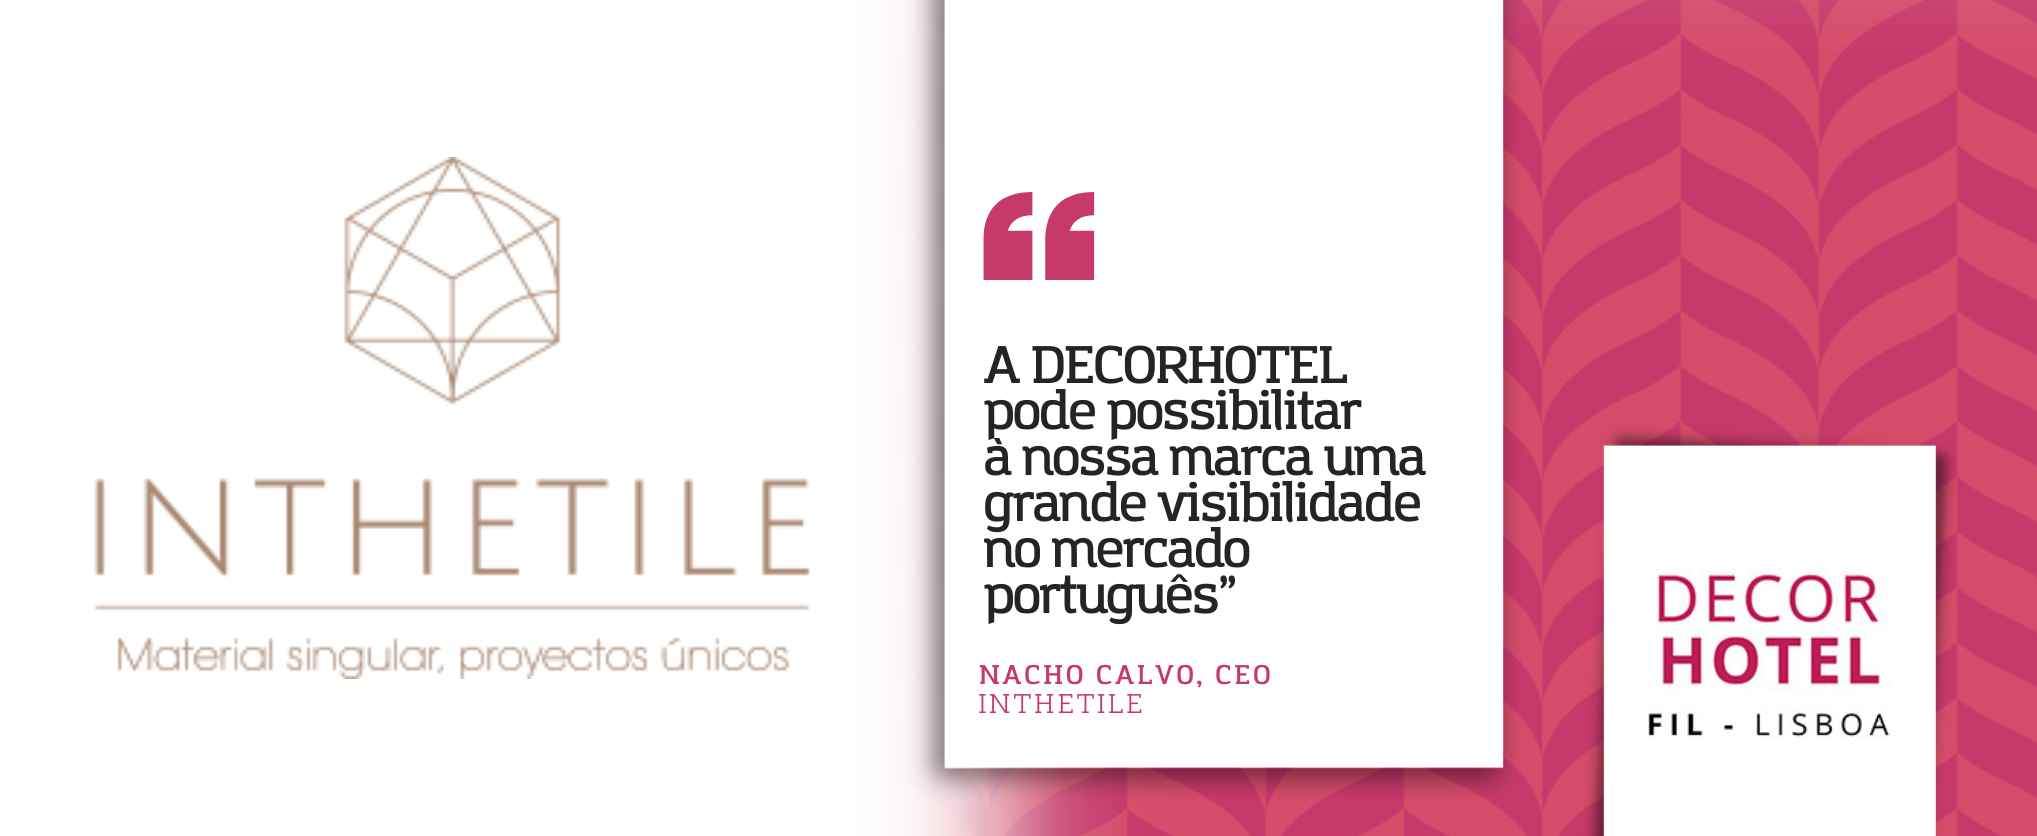 INTHETILE: “A DECORHOTEL pode possibilitar à nossa marca uma grande visibilidade no mercado português”